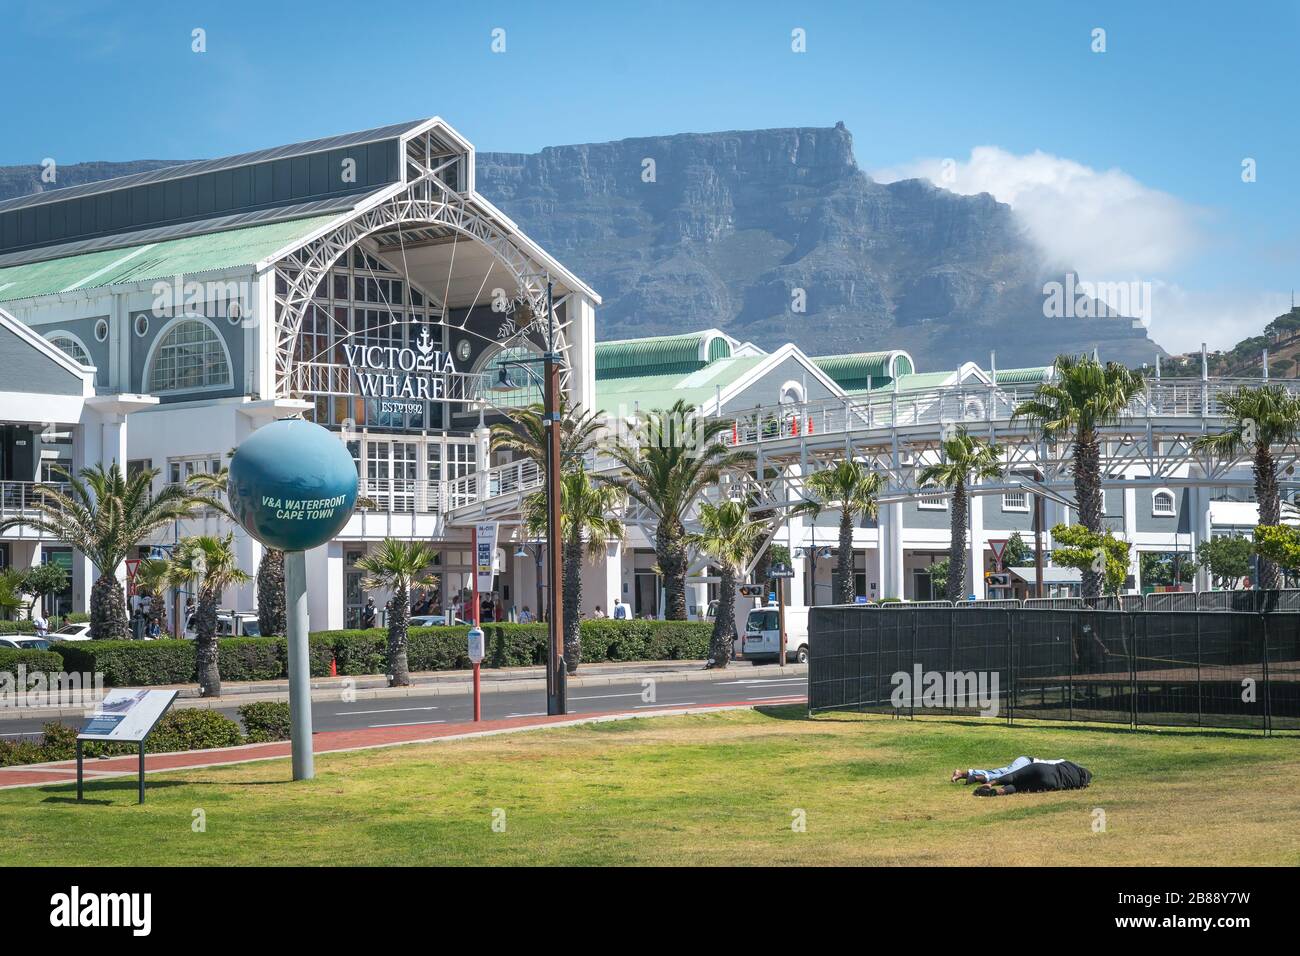 Cape Town, Afrique du Sud - 25 novembre 2019 - Centre commercial Victoria and Albert Waterfront et vue sur Table Mountain en arrière-plan Banque D'Images